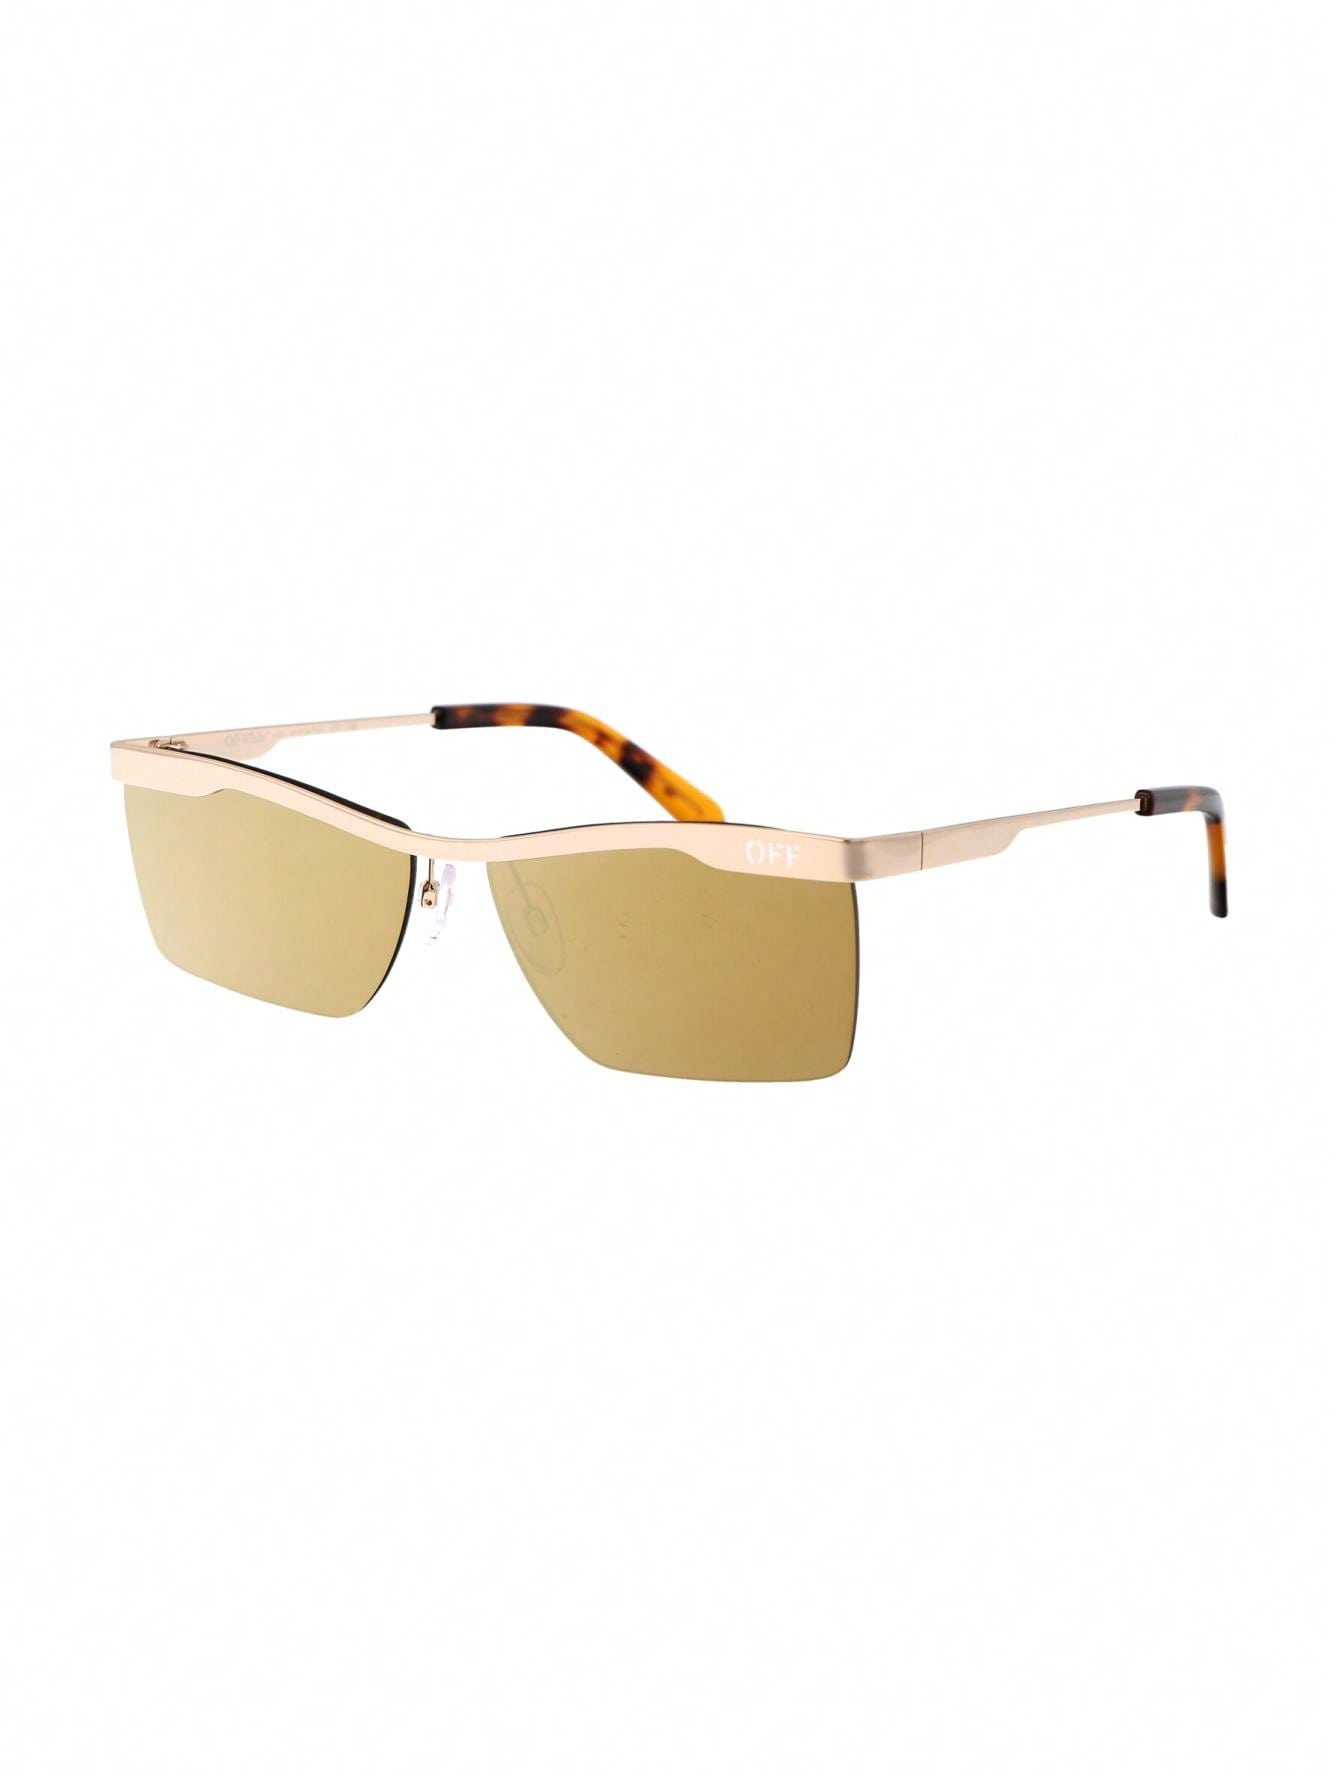 черные солнцезащитные очки prescott off white Мужские солнцезащитные очки Off-White КОРИЧНЕВЫЕ OERI095F23MET0017676, коричневый